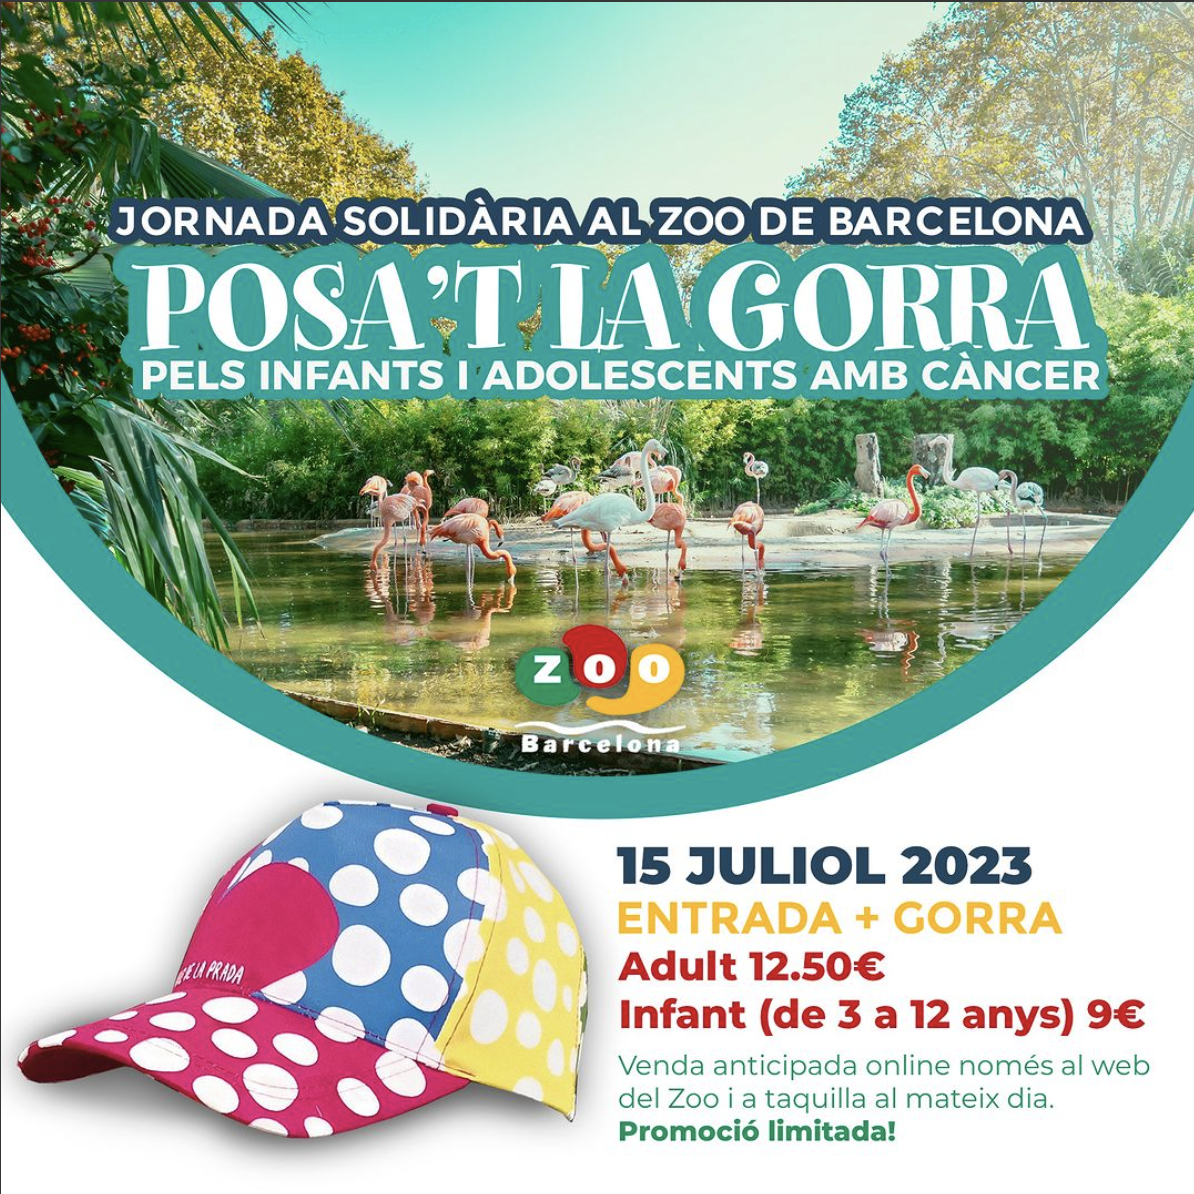 Jornada solidària al Zoo de Barcelona - Posa't la Gorra pels infants i adolescents amb Càncer